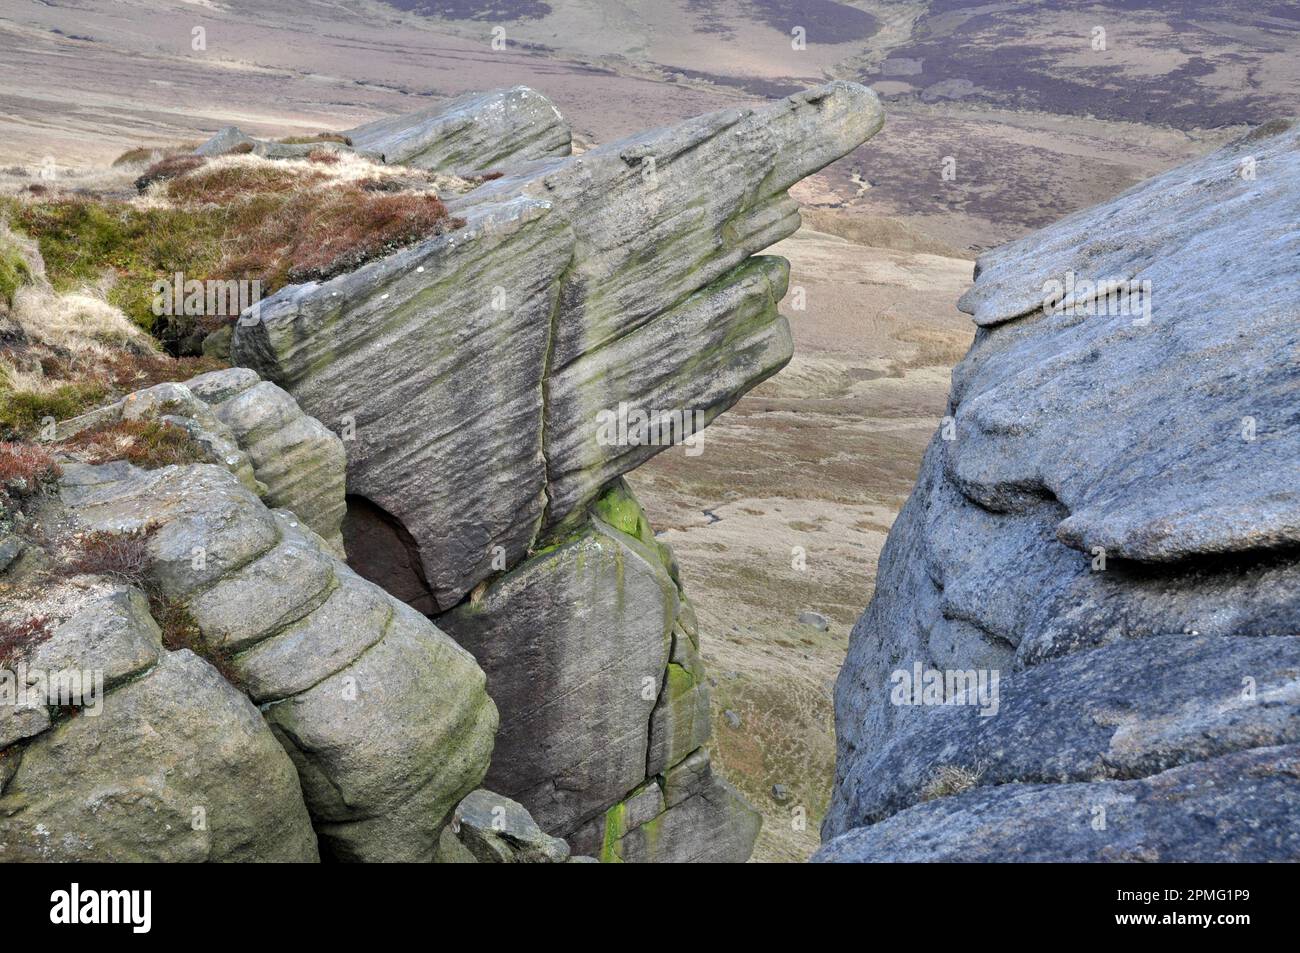 Formation de roches ressemblant à un panneau, à l'extrémité nord de Kinder Scout, Peak District, Derbyshire, Angleterre Banque D'Images